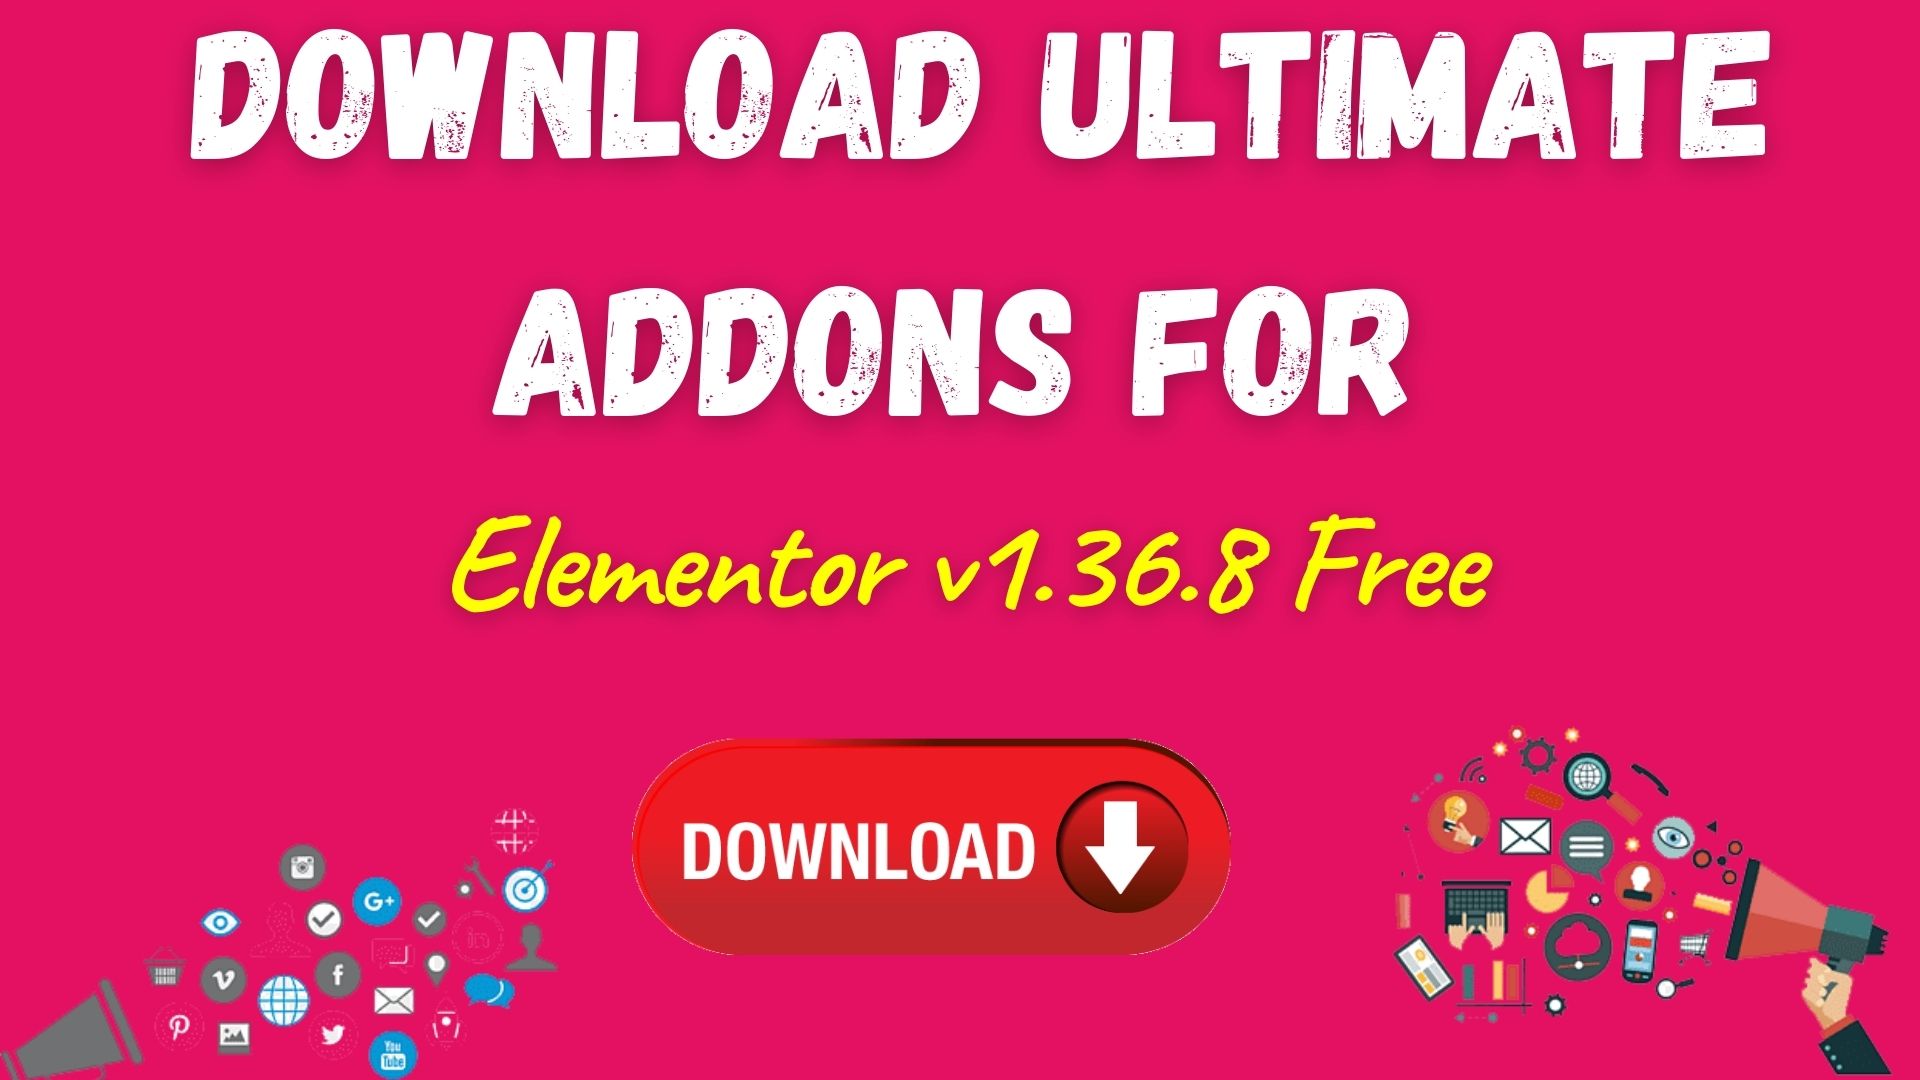 Download ultimate addons for elementor v1. 36. 8 free